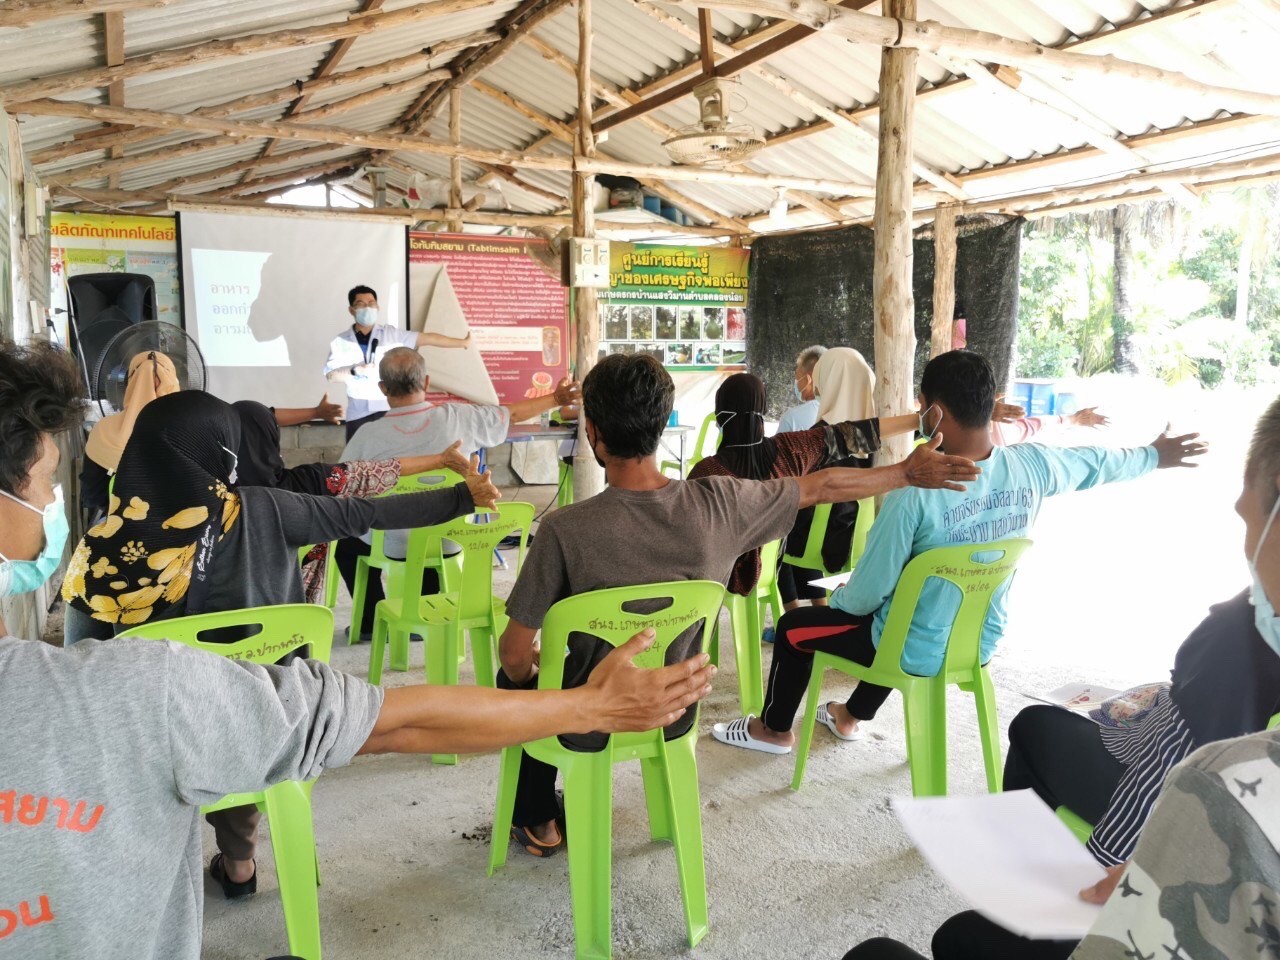 ทีมคณาจารย์วิชาการรับใช้สังคม ลงพื้นที่ชุมชนต้นแบบเพื่อยกระดับการส่งเสริมสุขภาพเกษตรกรชาวสวน